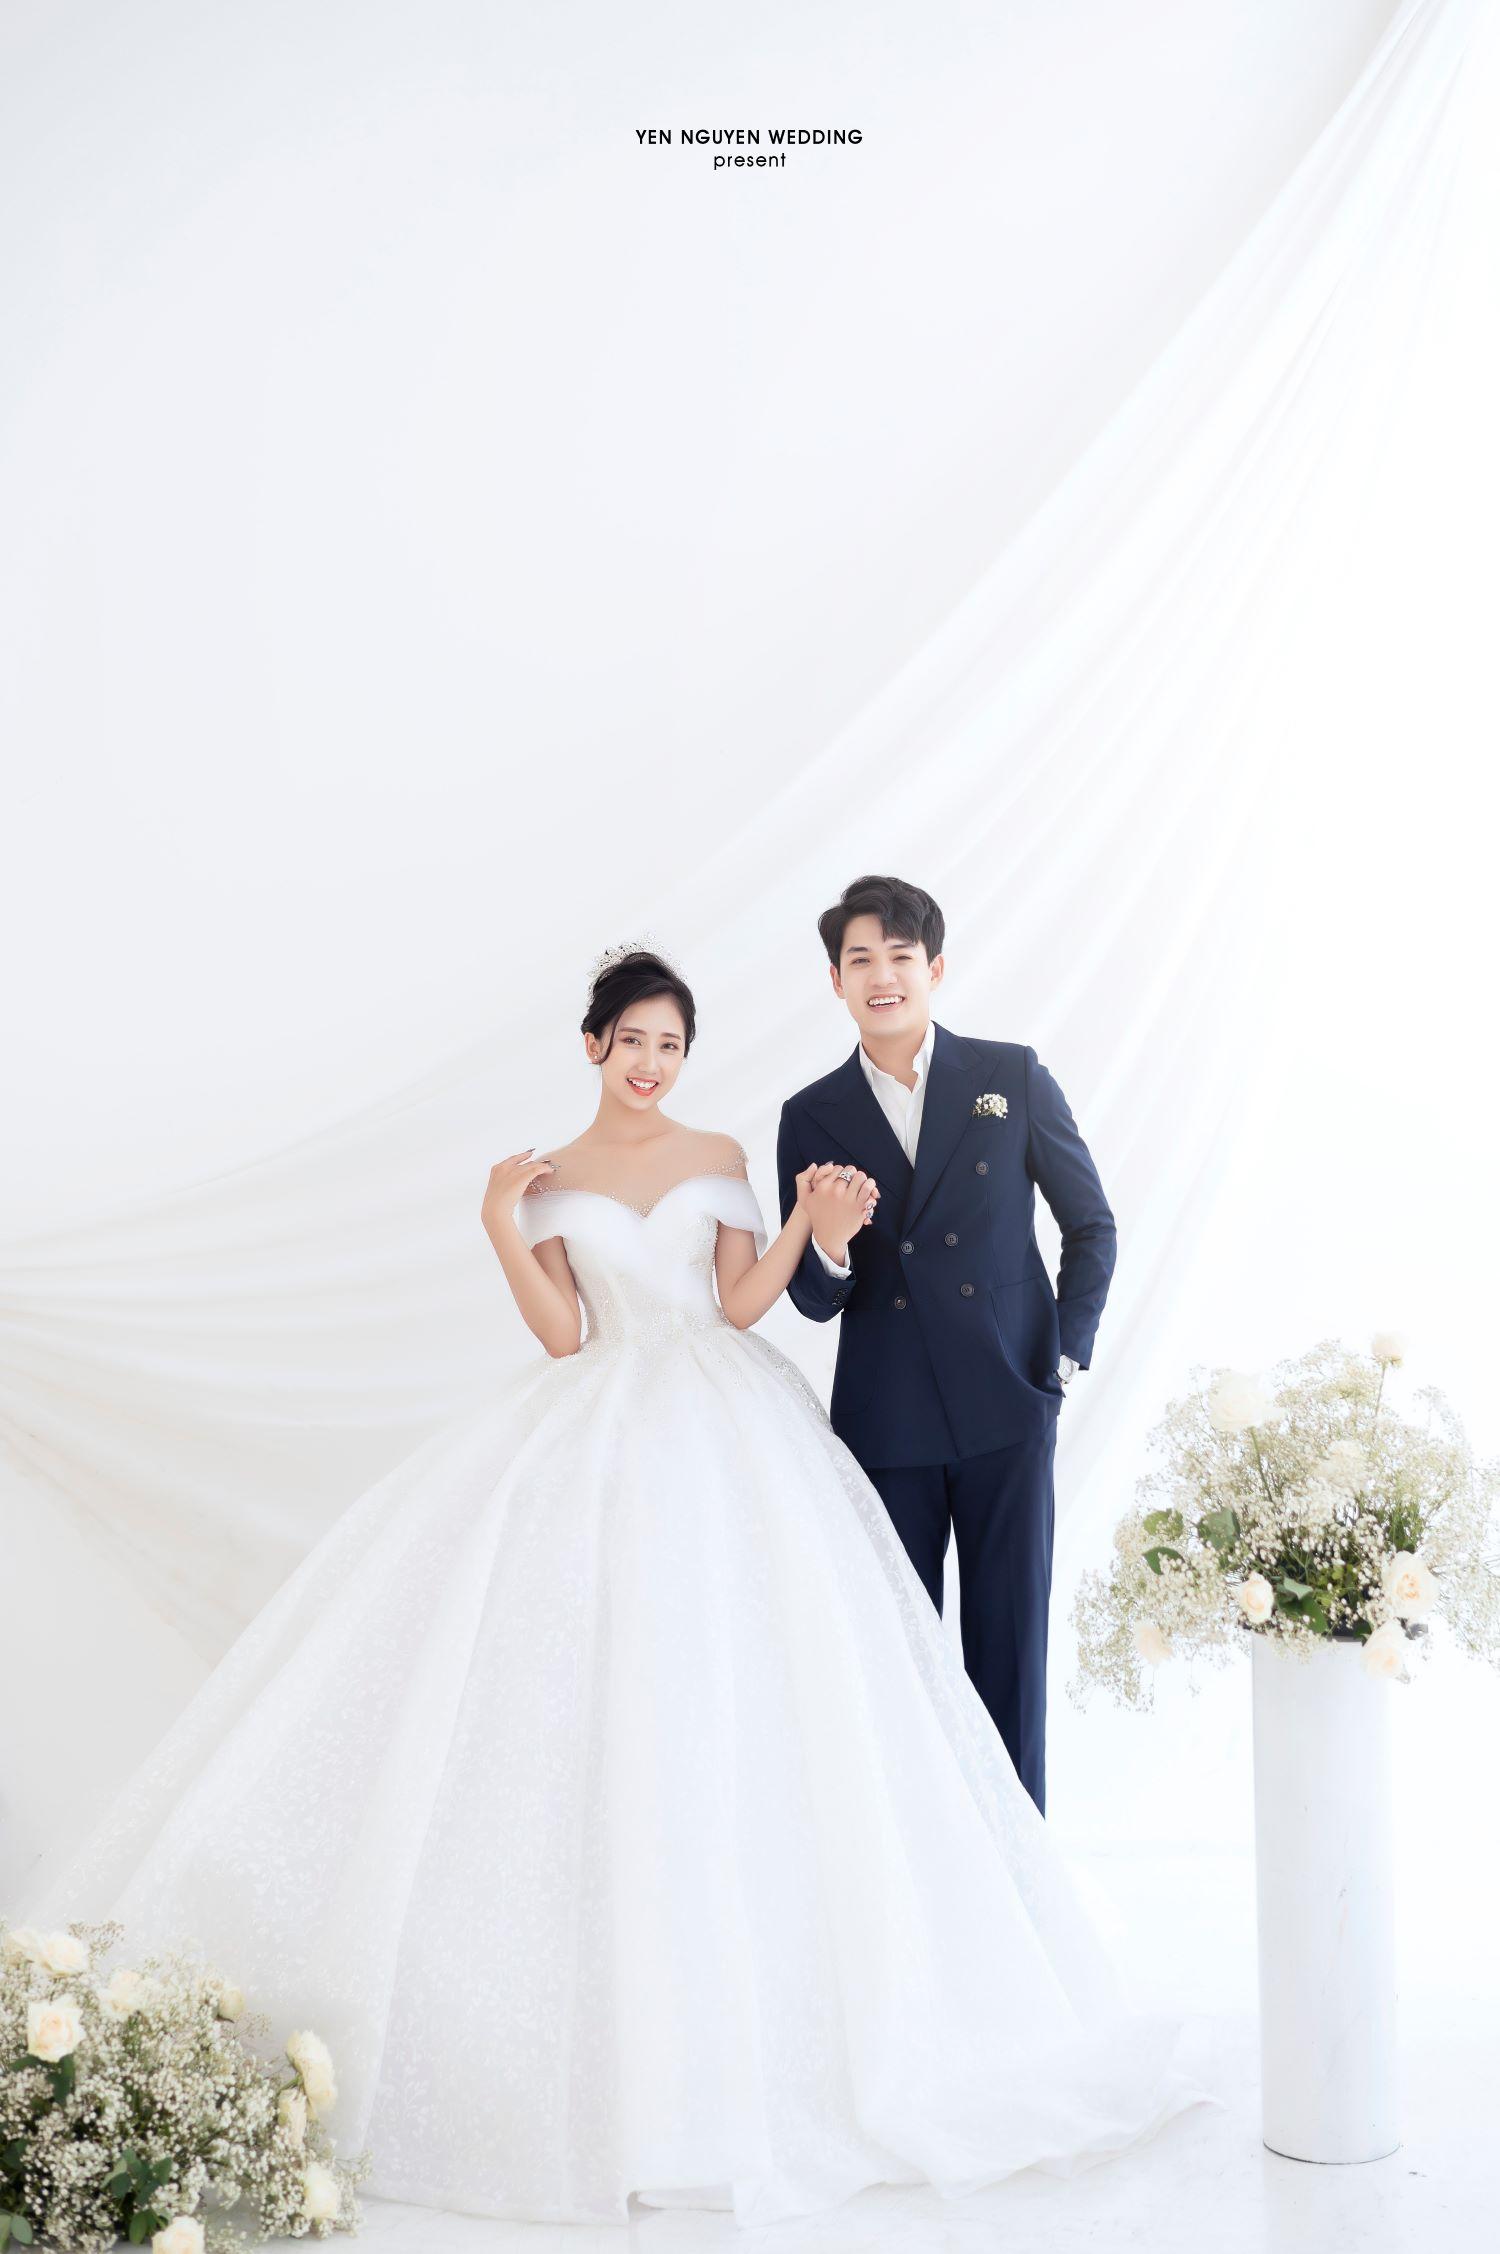 Cô dâu chú rể rạng rỡ cùng thương hiệu Yen Nguyen Bridal